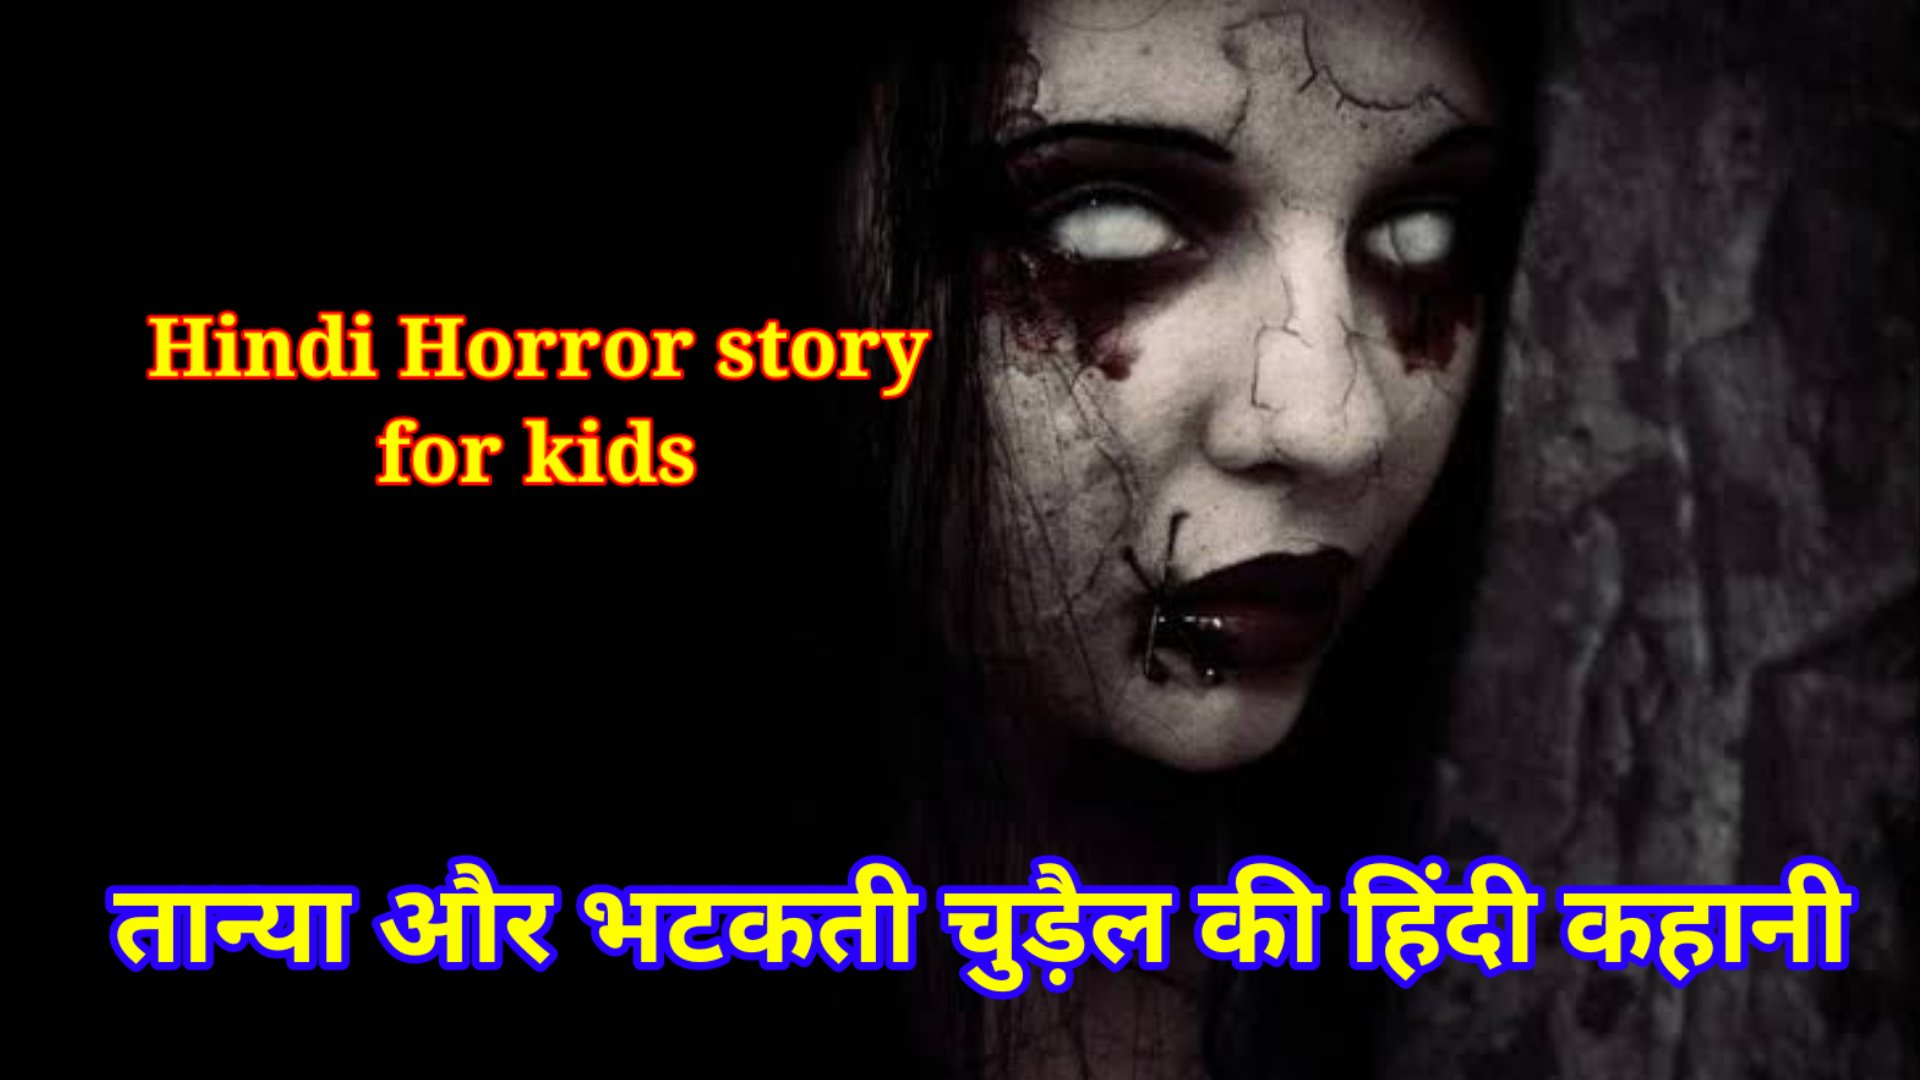 Horror story for kids in hindi - तान्या और भटकती चुड़ैल की हिंदी कहानी